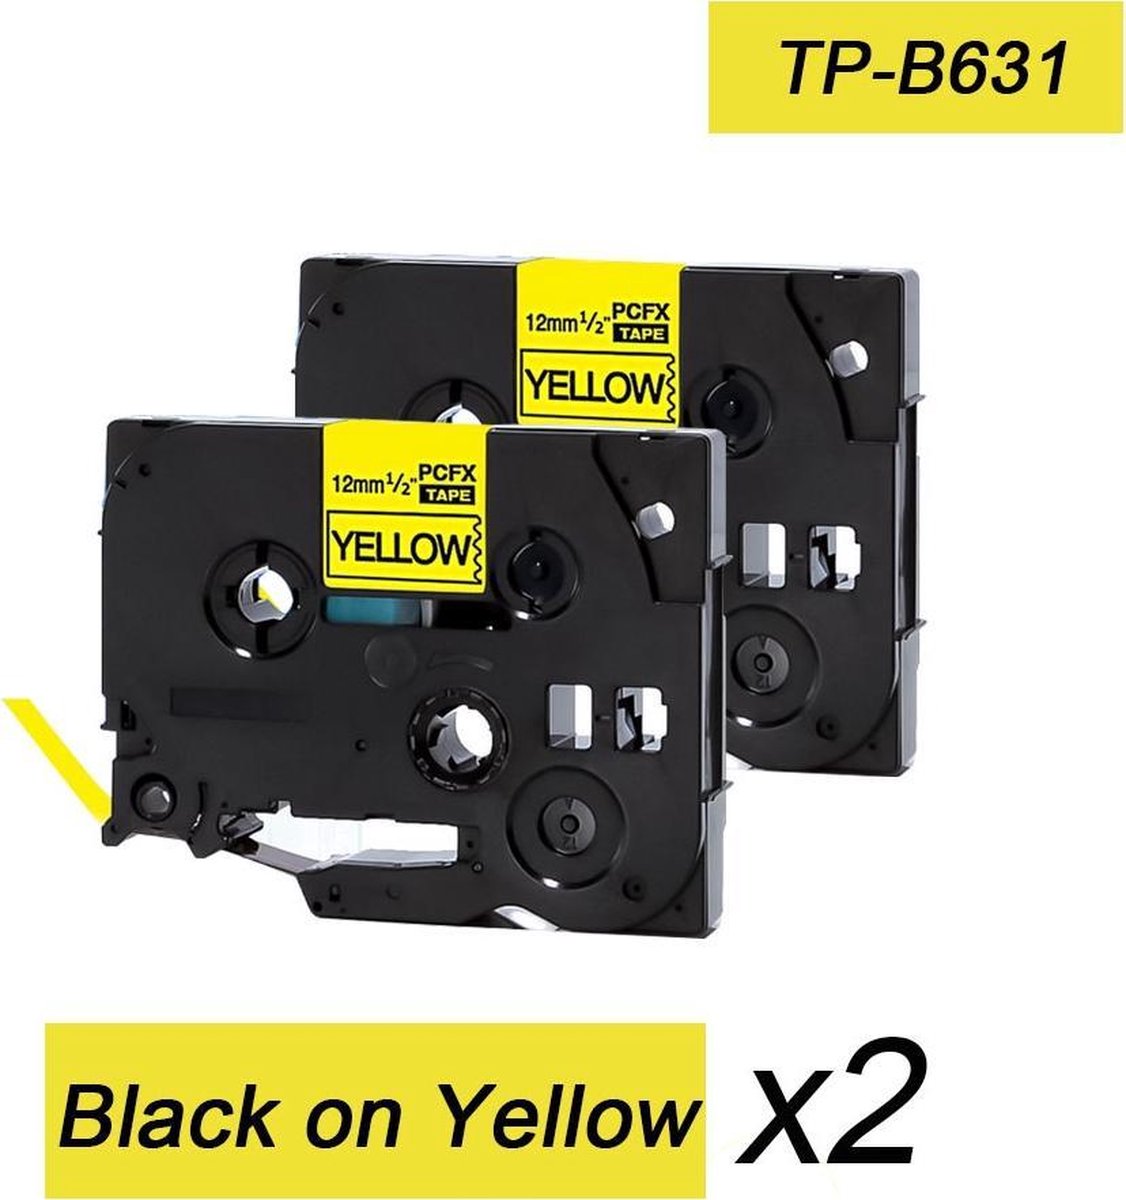 2x Brother Tze-631 TZ-631 Compatible voor Brother P-touch Label Tapes - Zwart op Geel - 12mm